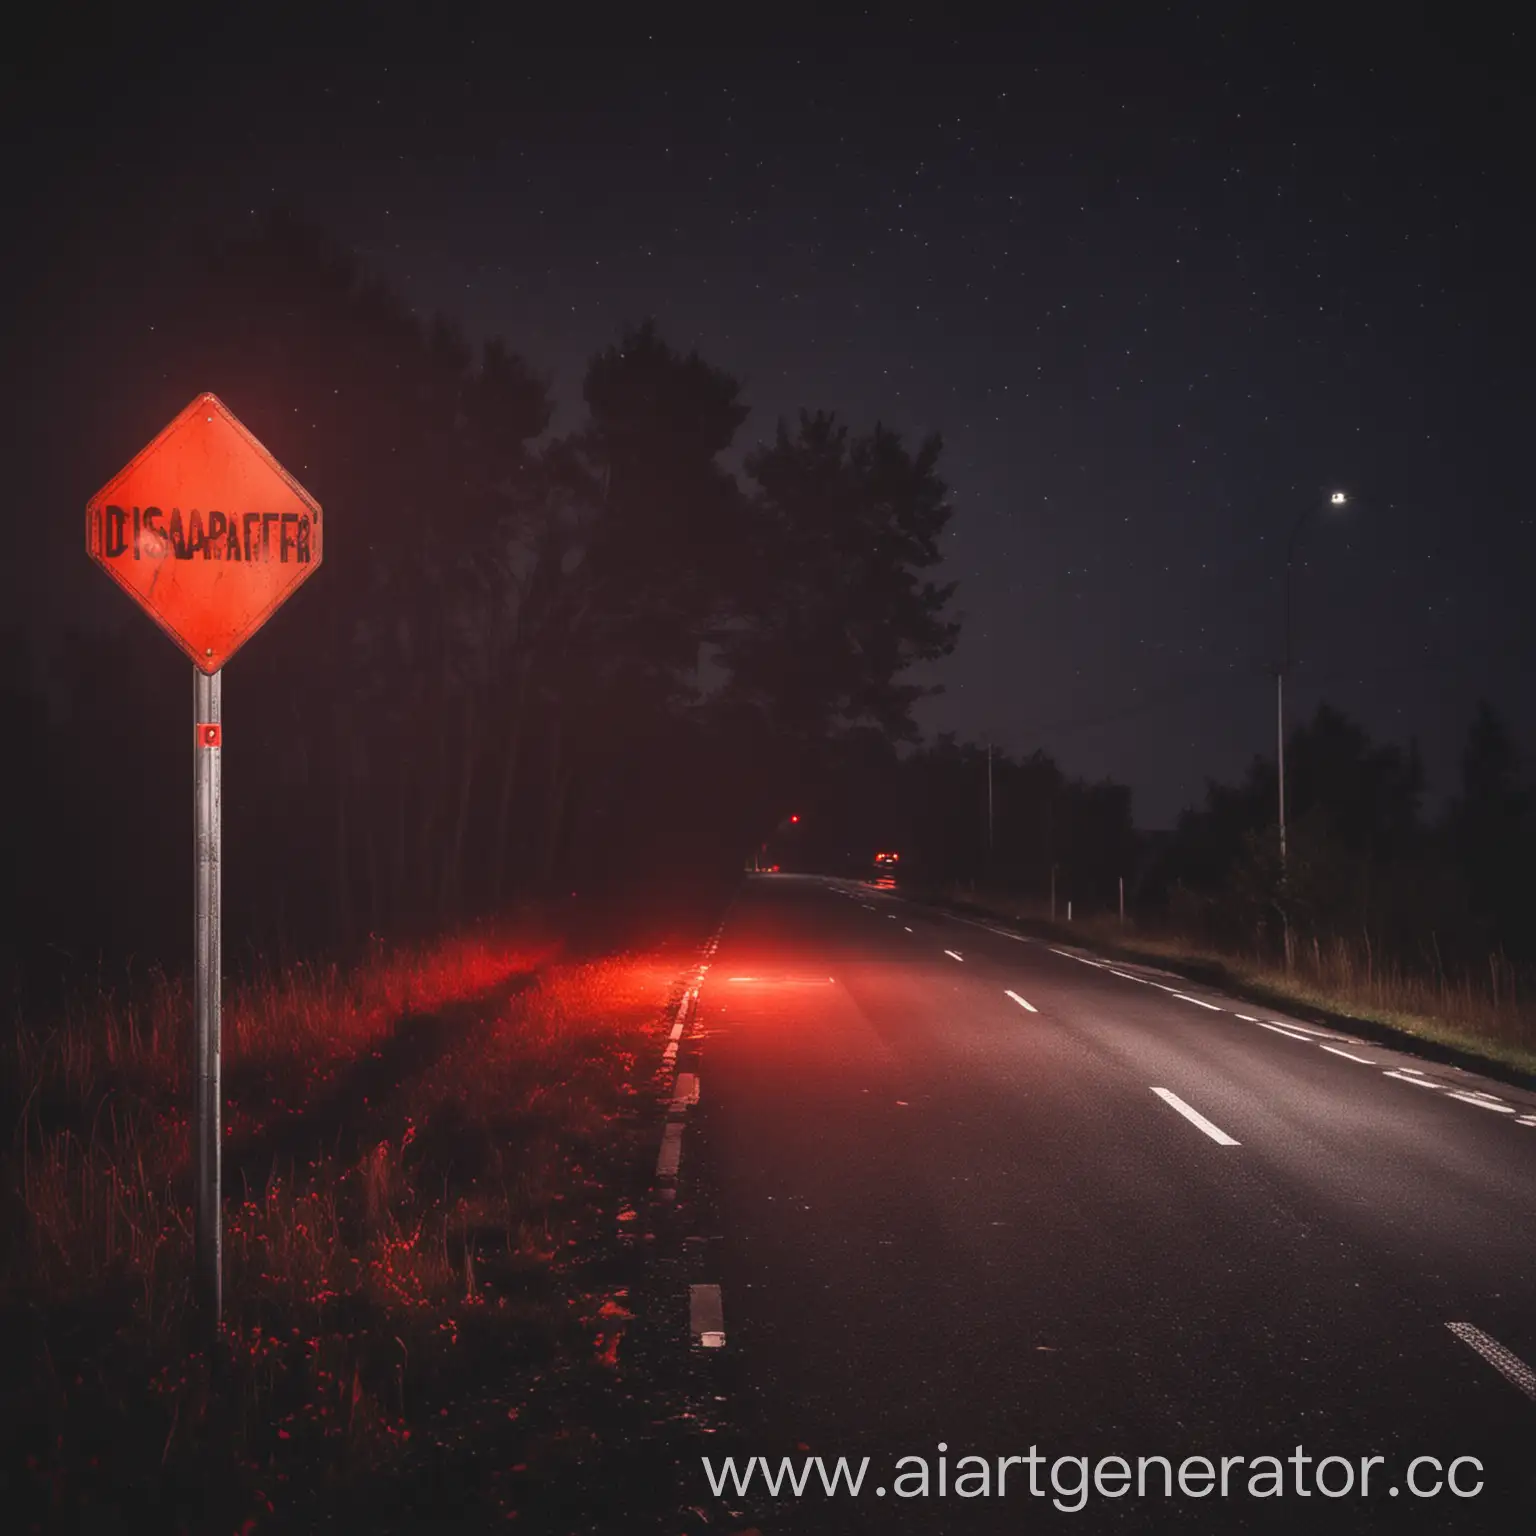 ночная дорога с красным свечением справой стороны дорожный знак с надписью (Disappear)
